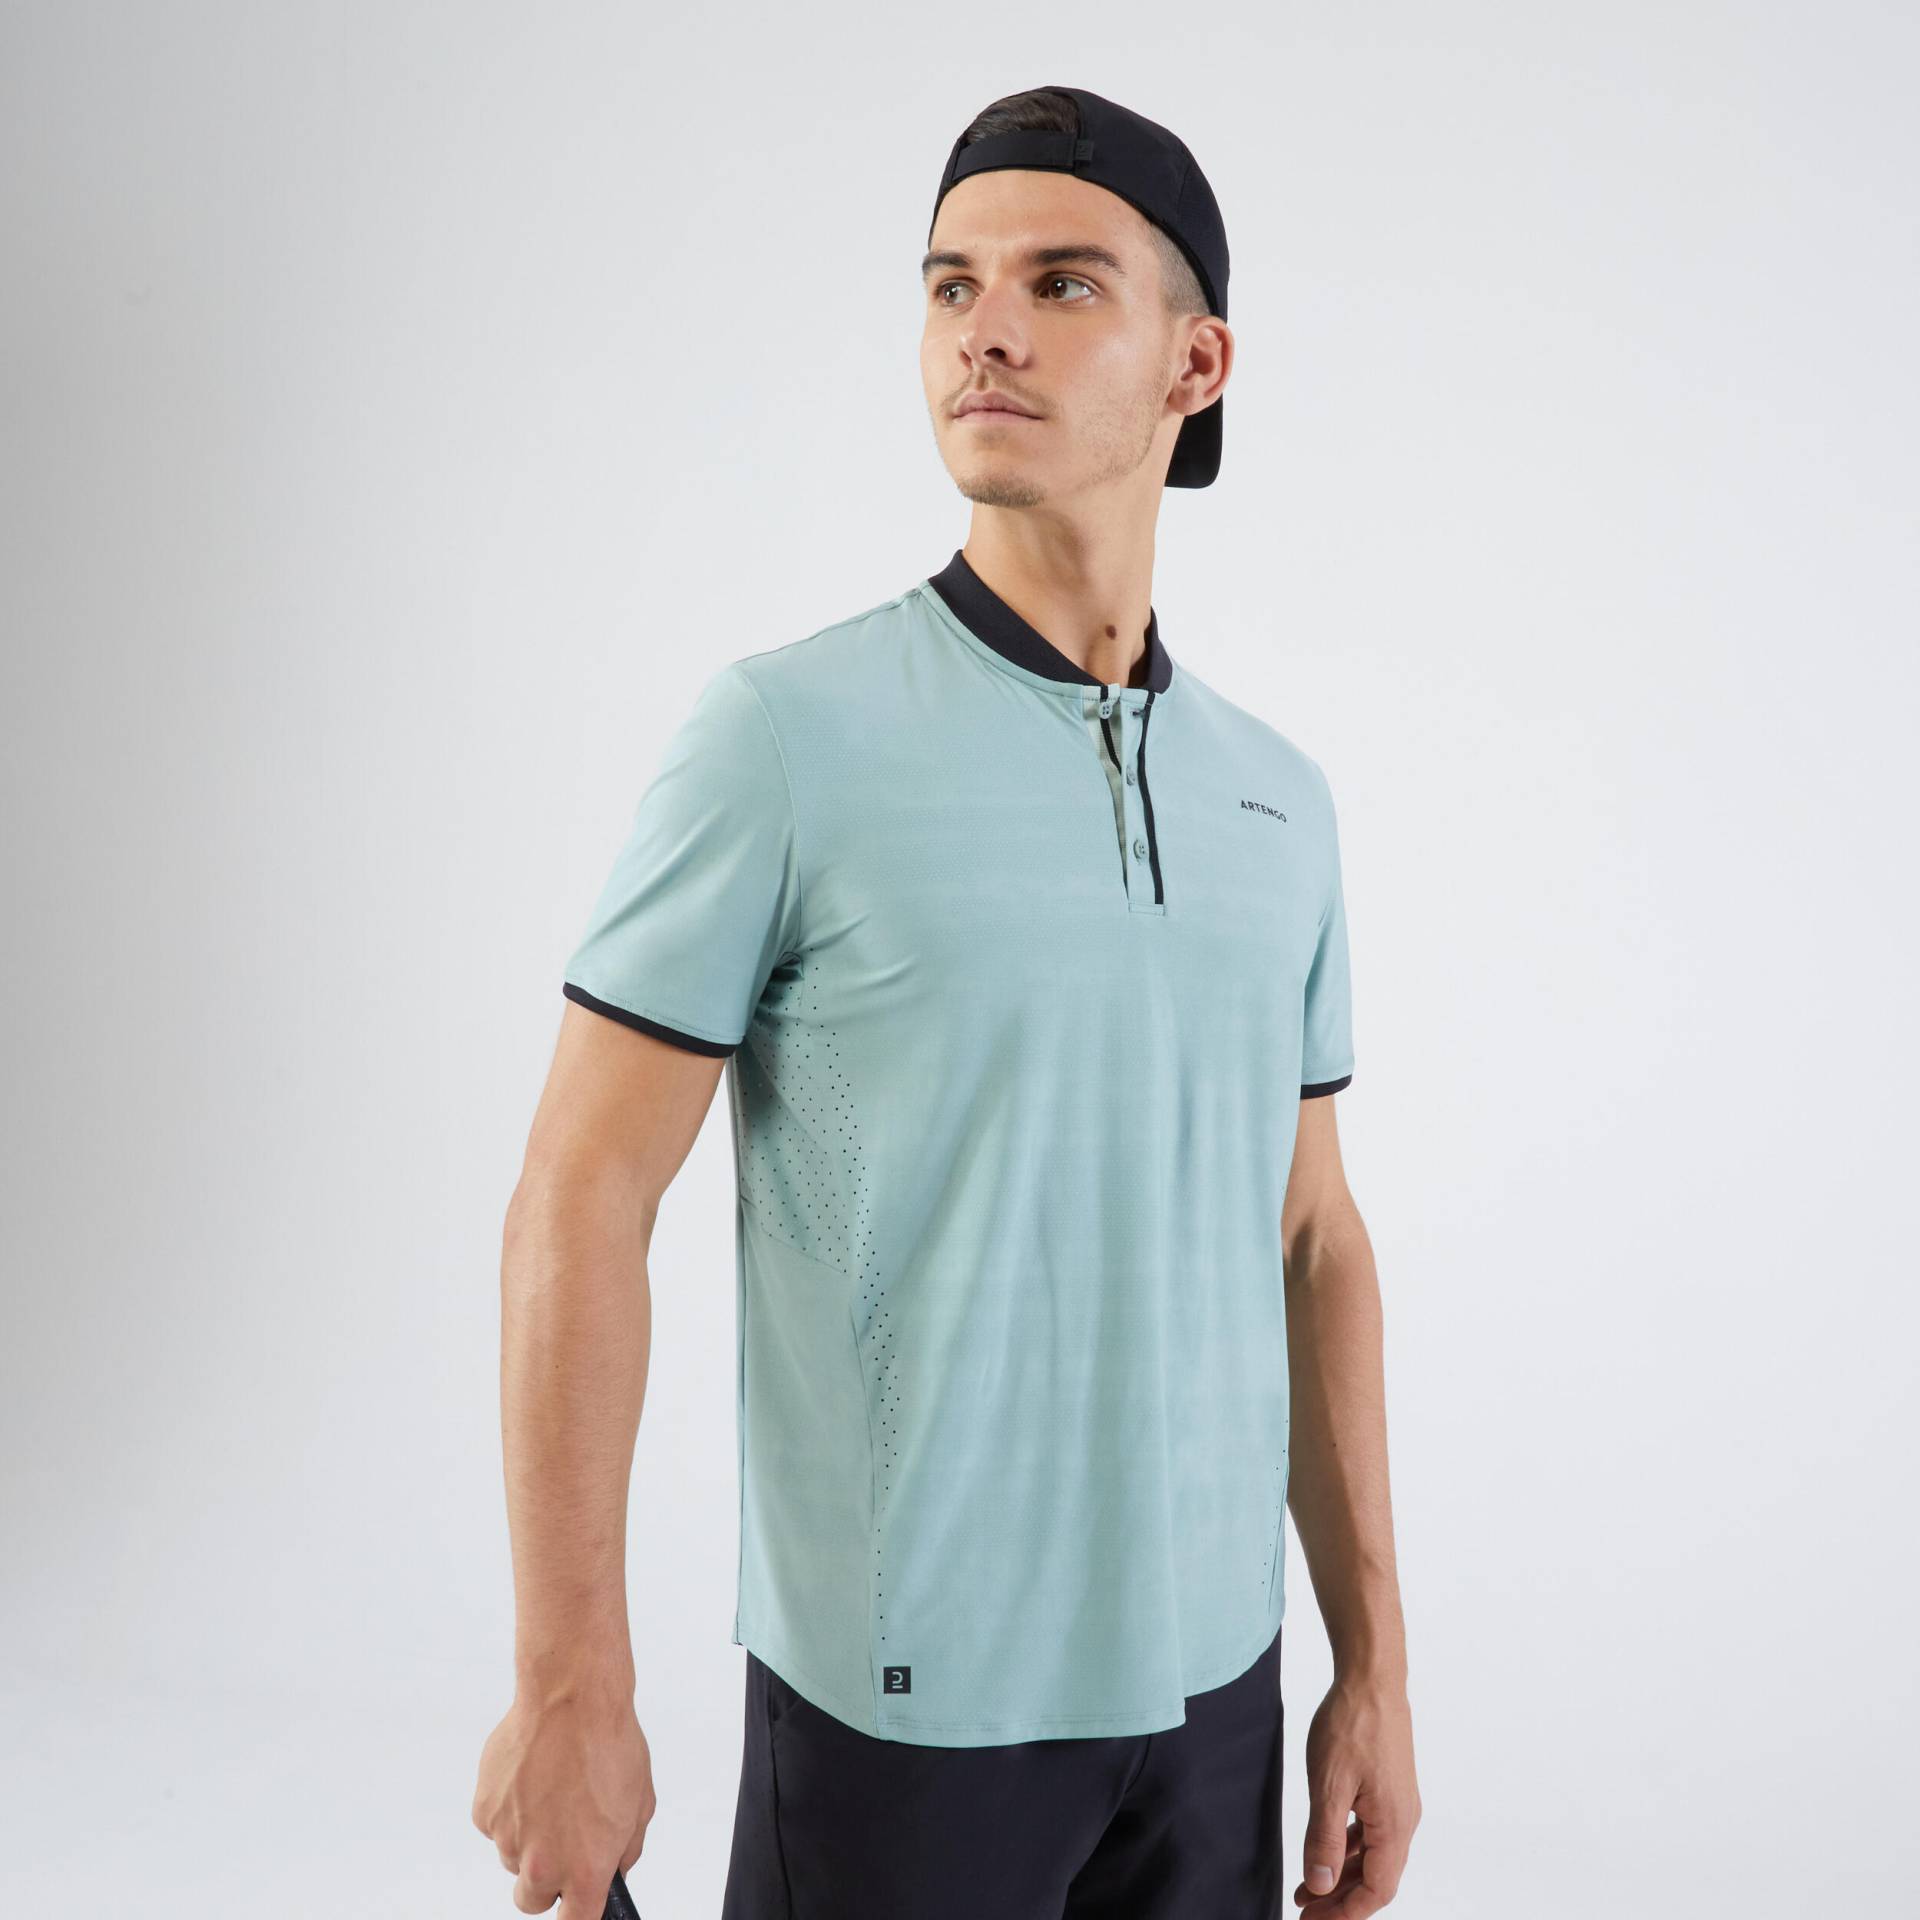 Herren Tennis T-Shirt - Dry+ graugrün von ARTENGO